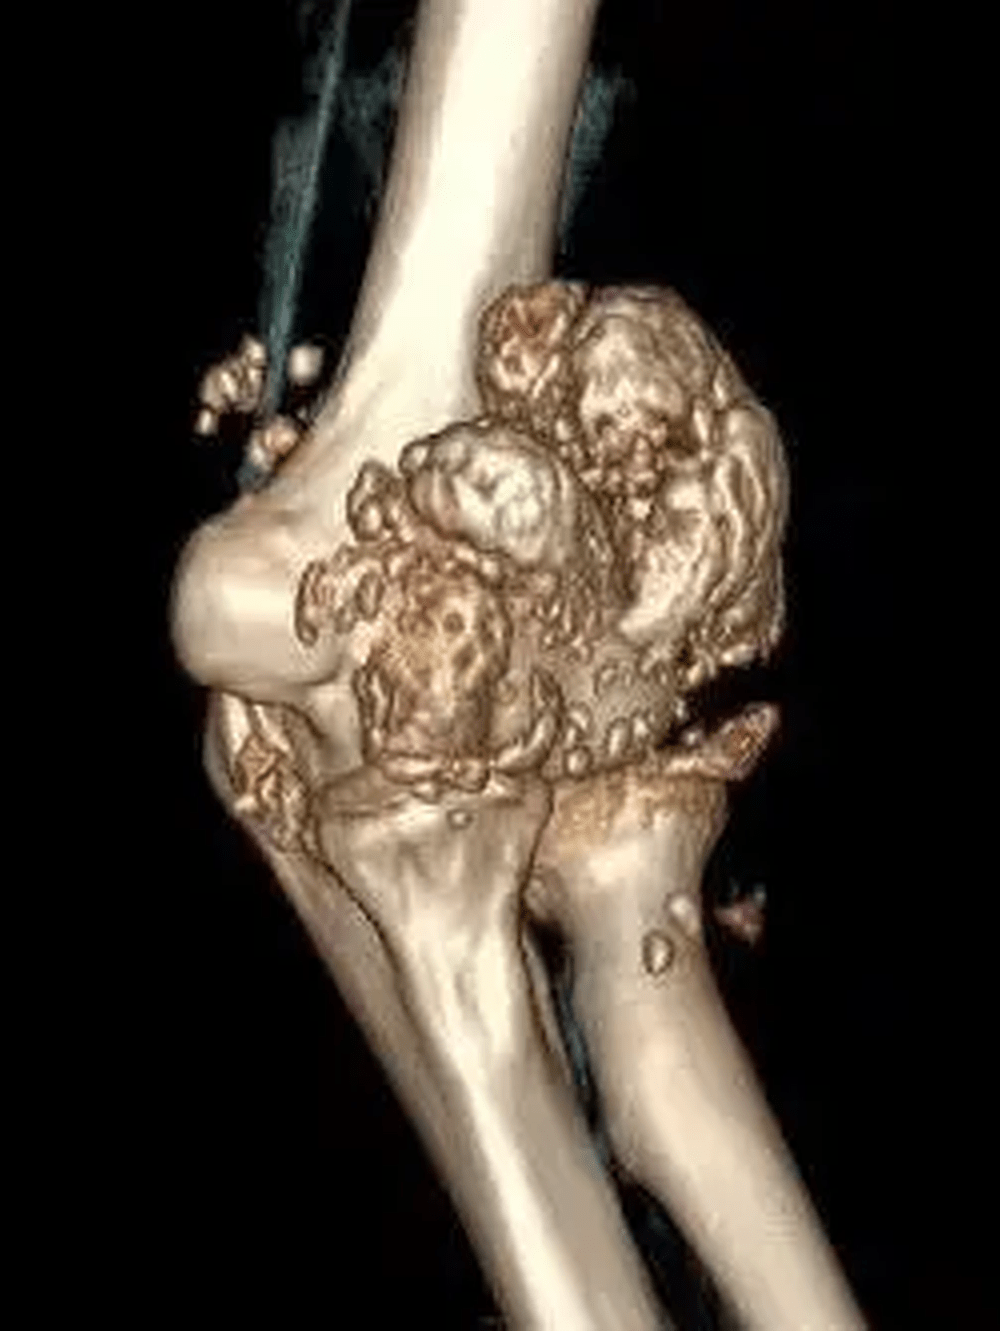 病人的手肘關節內居然長出千餘顆「珍珠」狀顆粒。